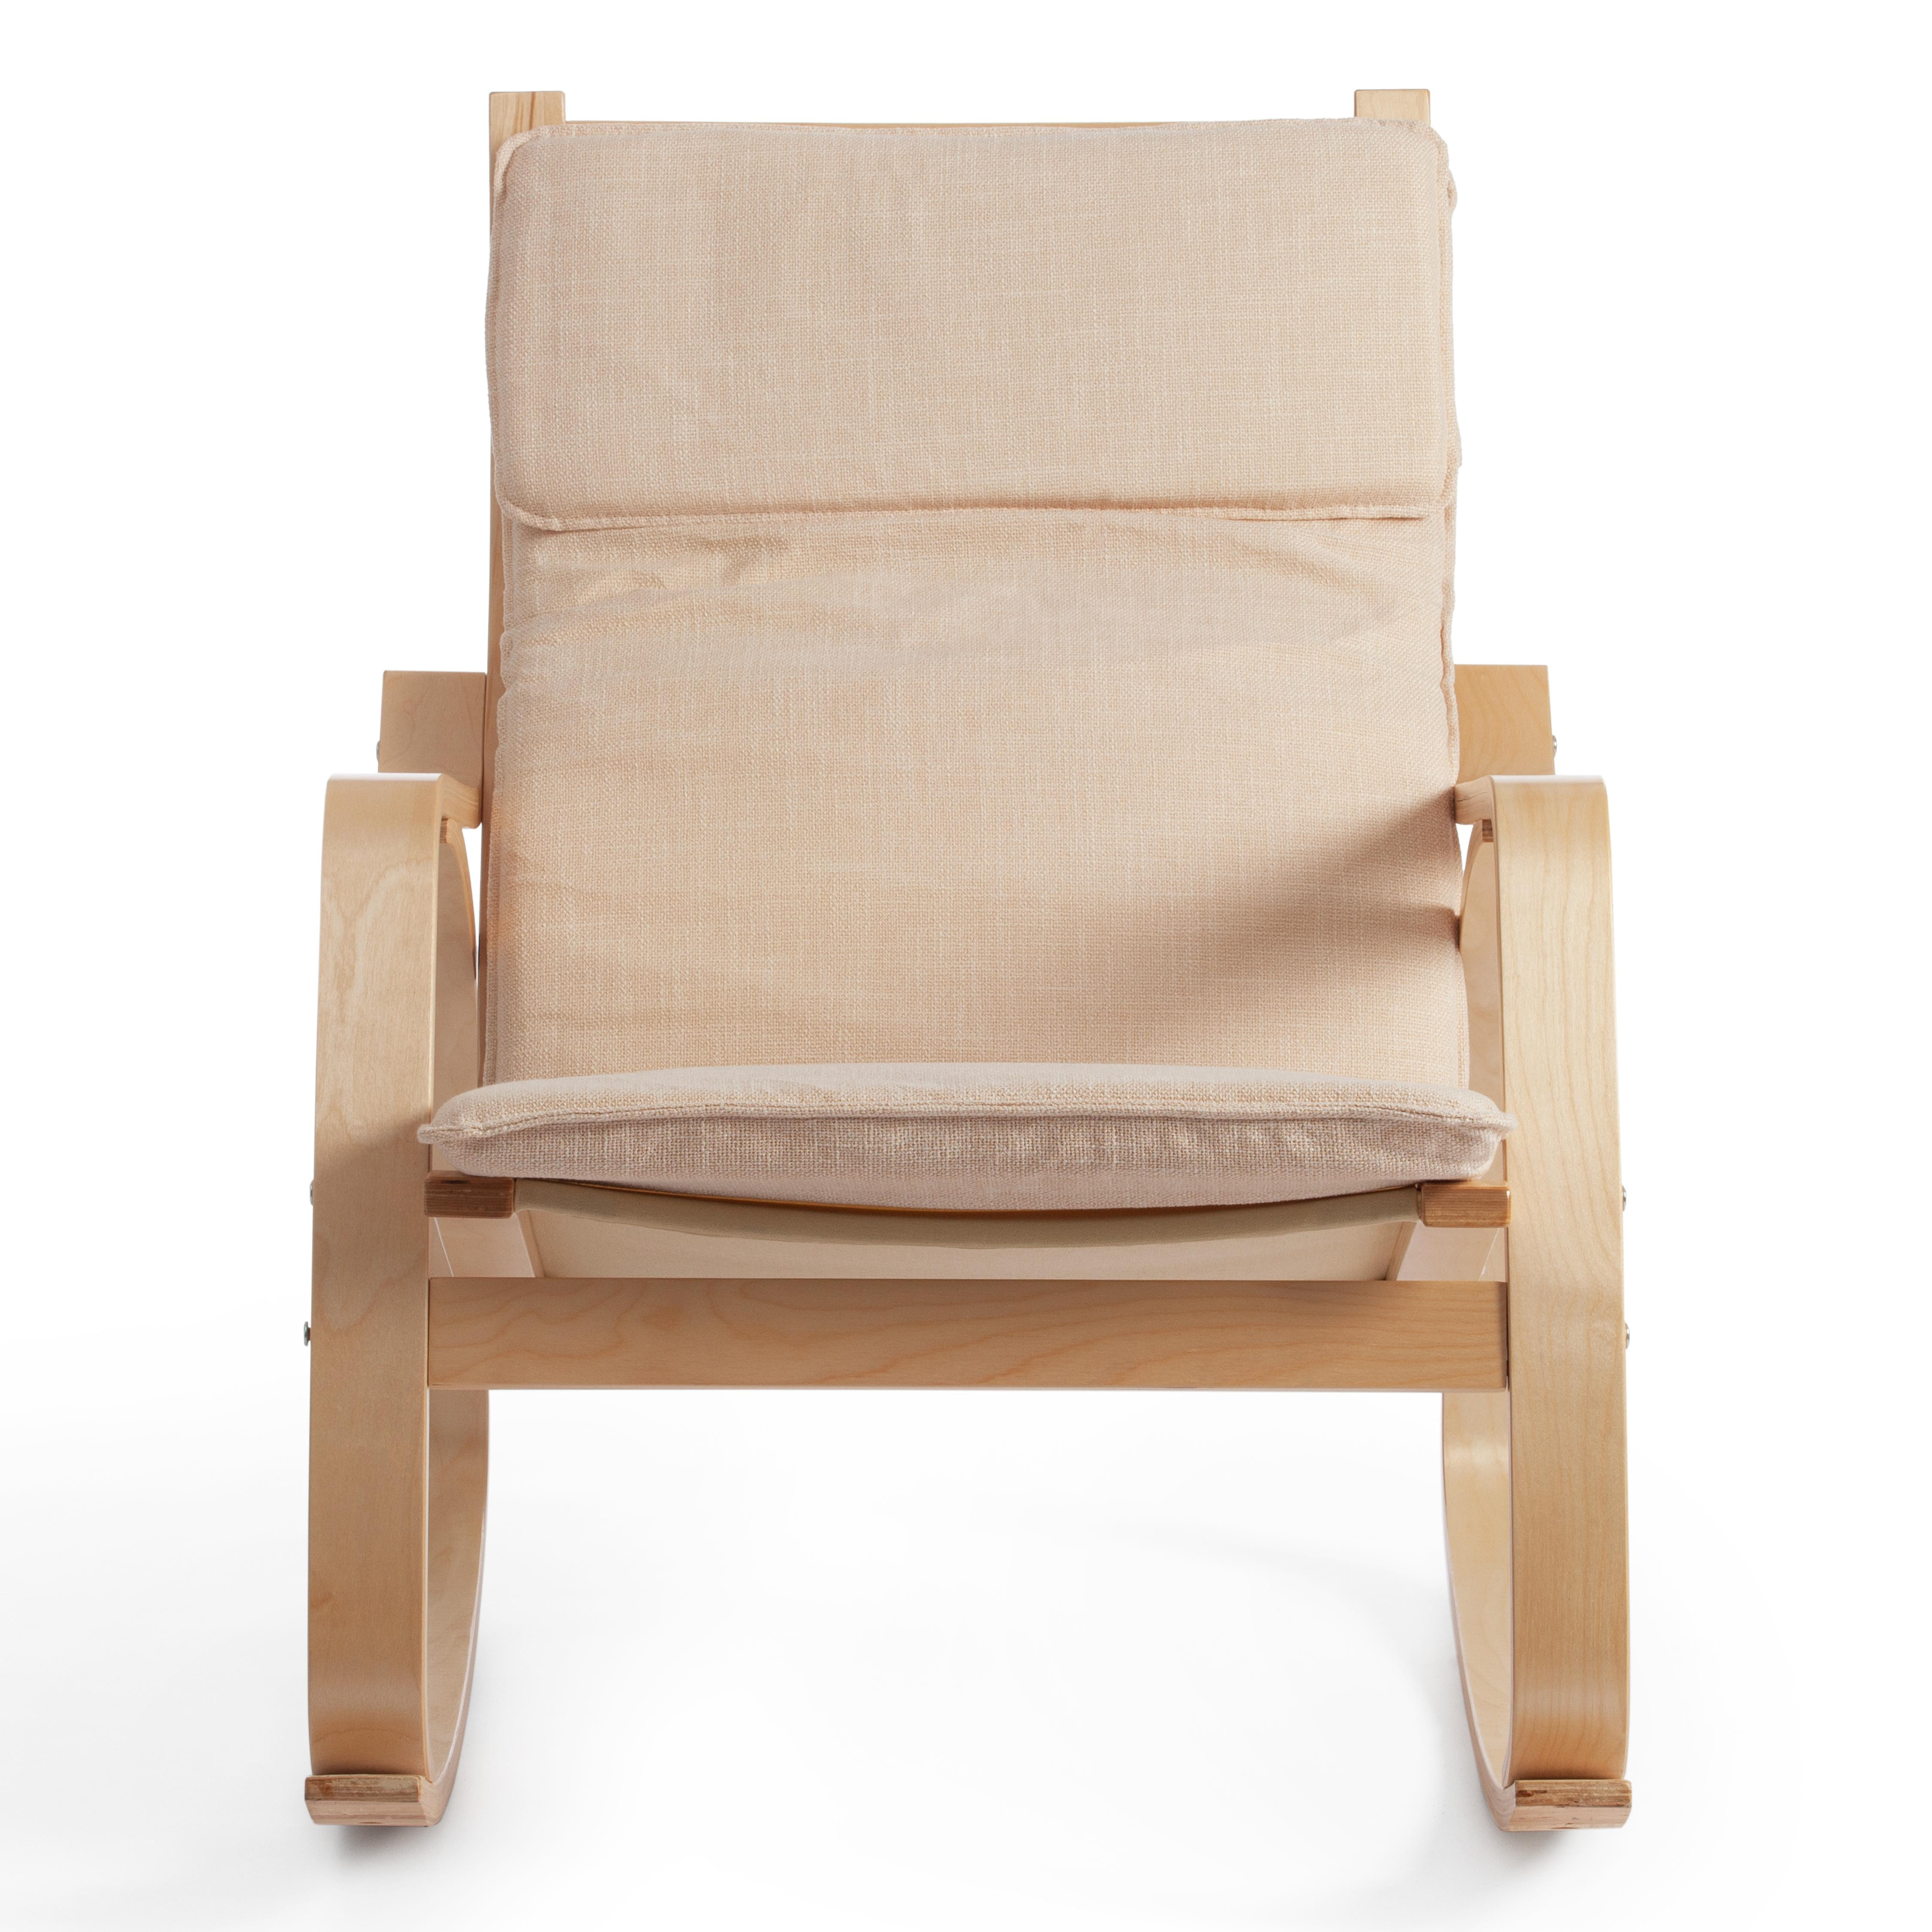 Кресло-качалка mod. AX3005 дерево береза, ткань: полиэстер/хлопок, 61х94,5х104 см, дерево: натуральный #1/ ткань бежевая 1501-4